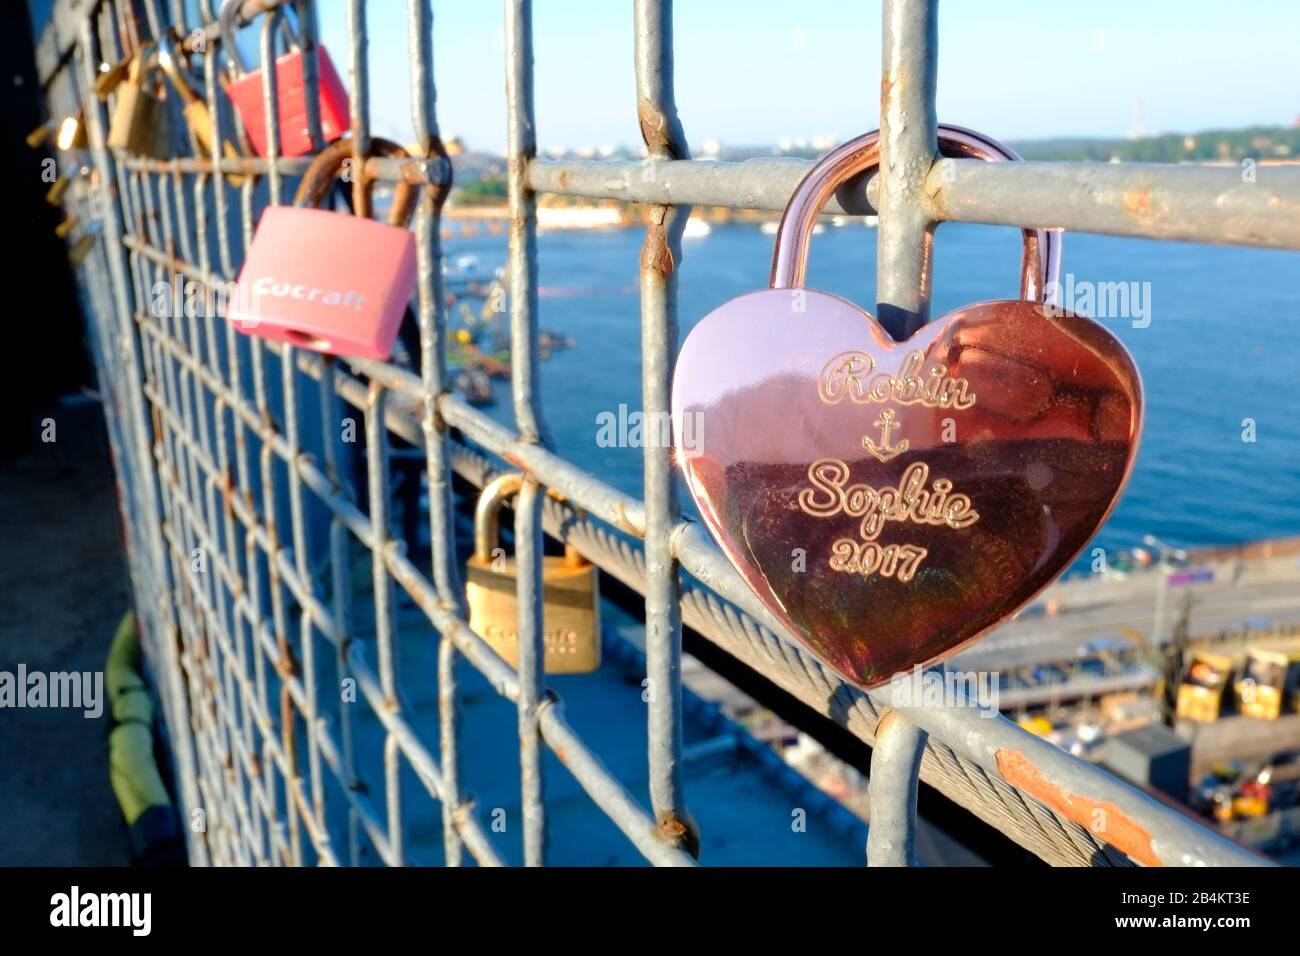 Les serrures verrouillées sur la clôture métallique du restaurant Gondola de Stockholm indiquent l'amour ou l'engagement des couples Banque D'Images